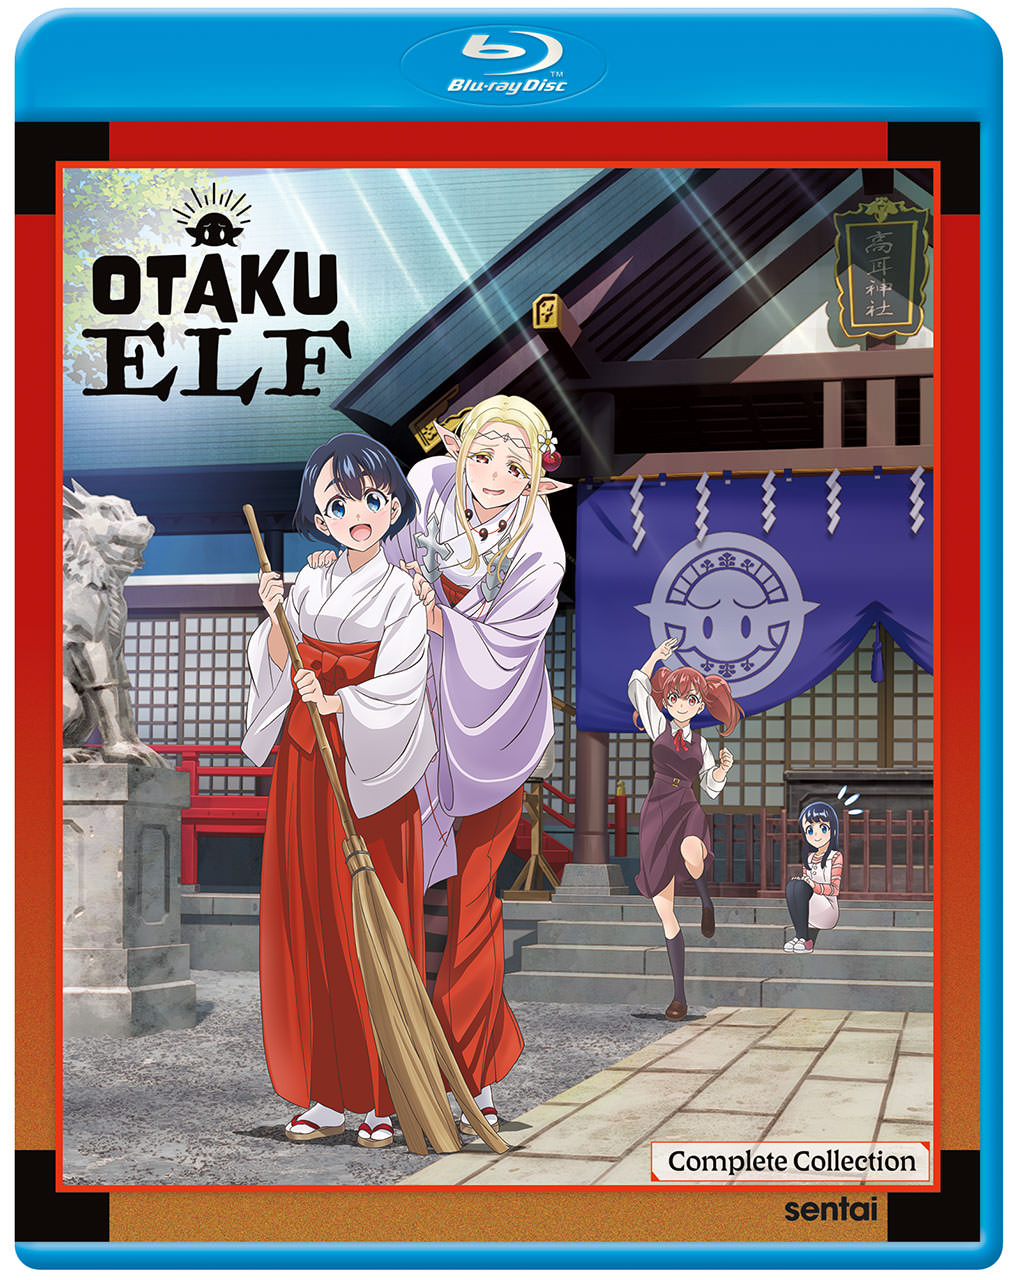 'Otaku Elf' Blu-ray Cover Art provided by Sentai Filmworks